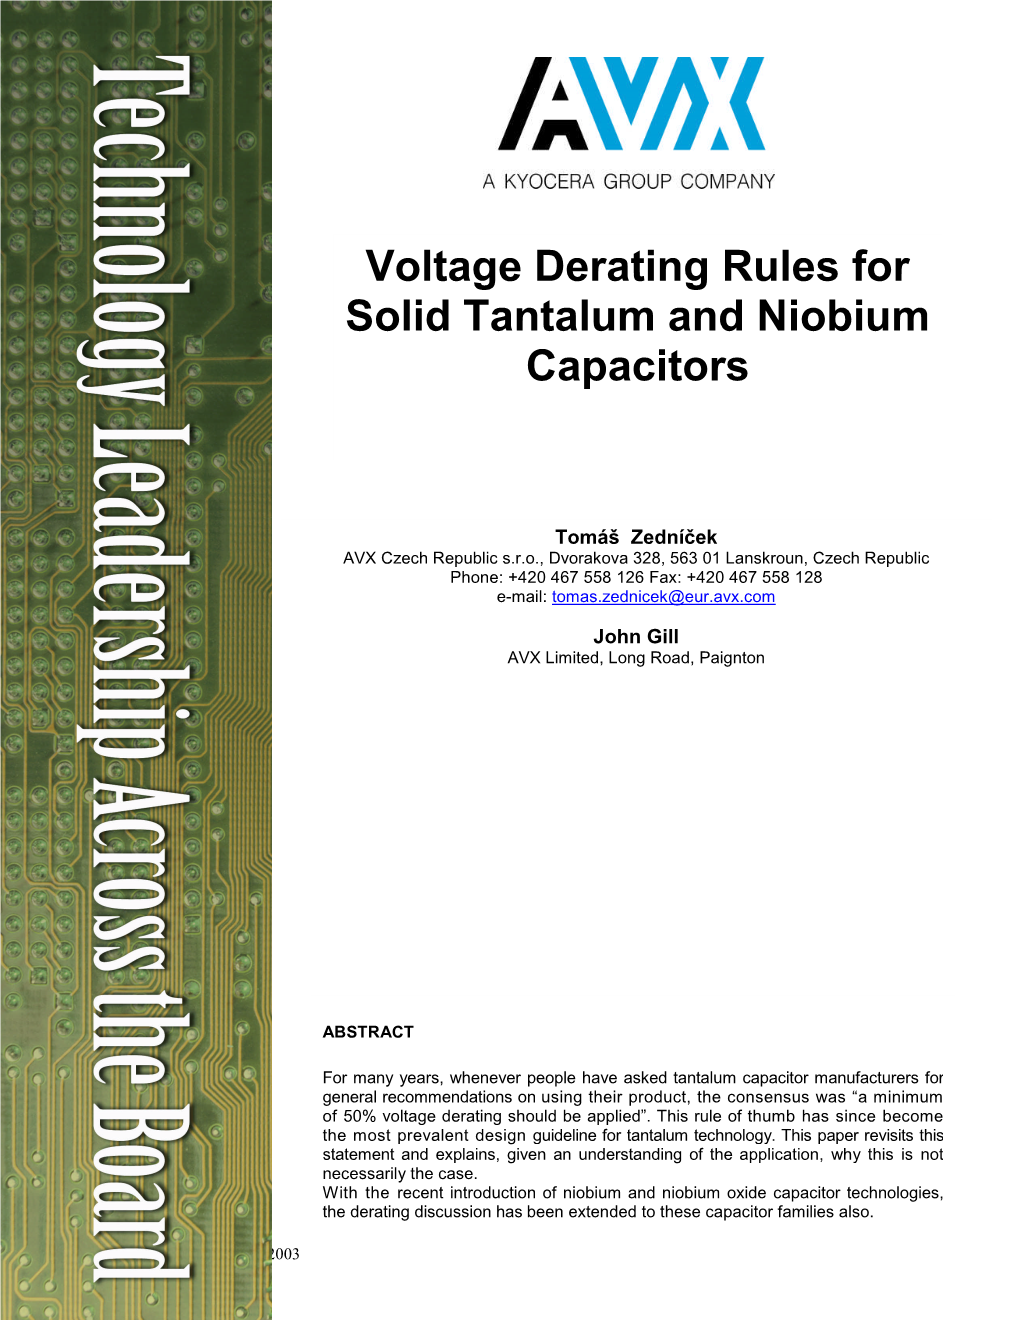 Voltage Derating Rules for Solid Tantalum and Niobium Capacitors